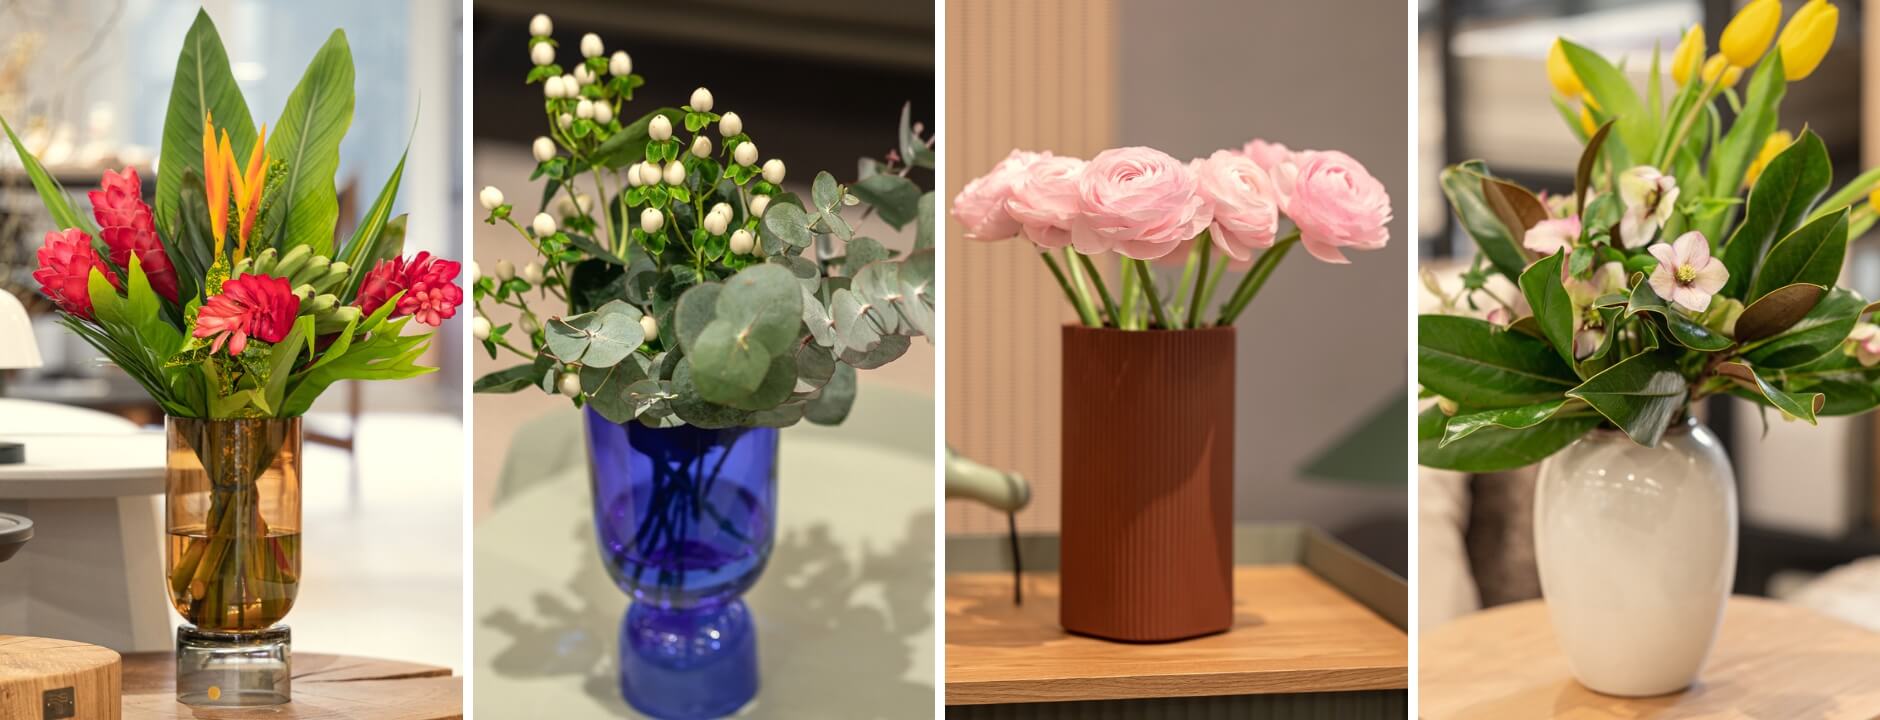 Találd meg nálunk a megfelelő virág és váza kompozíciót!